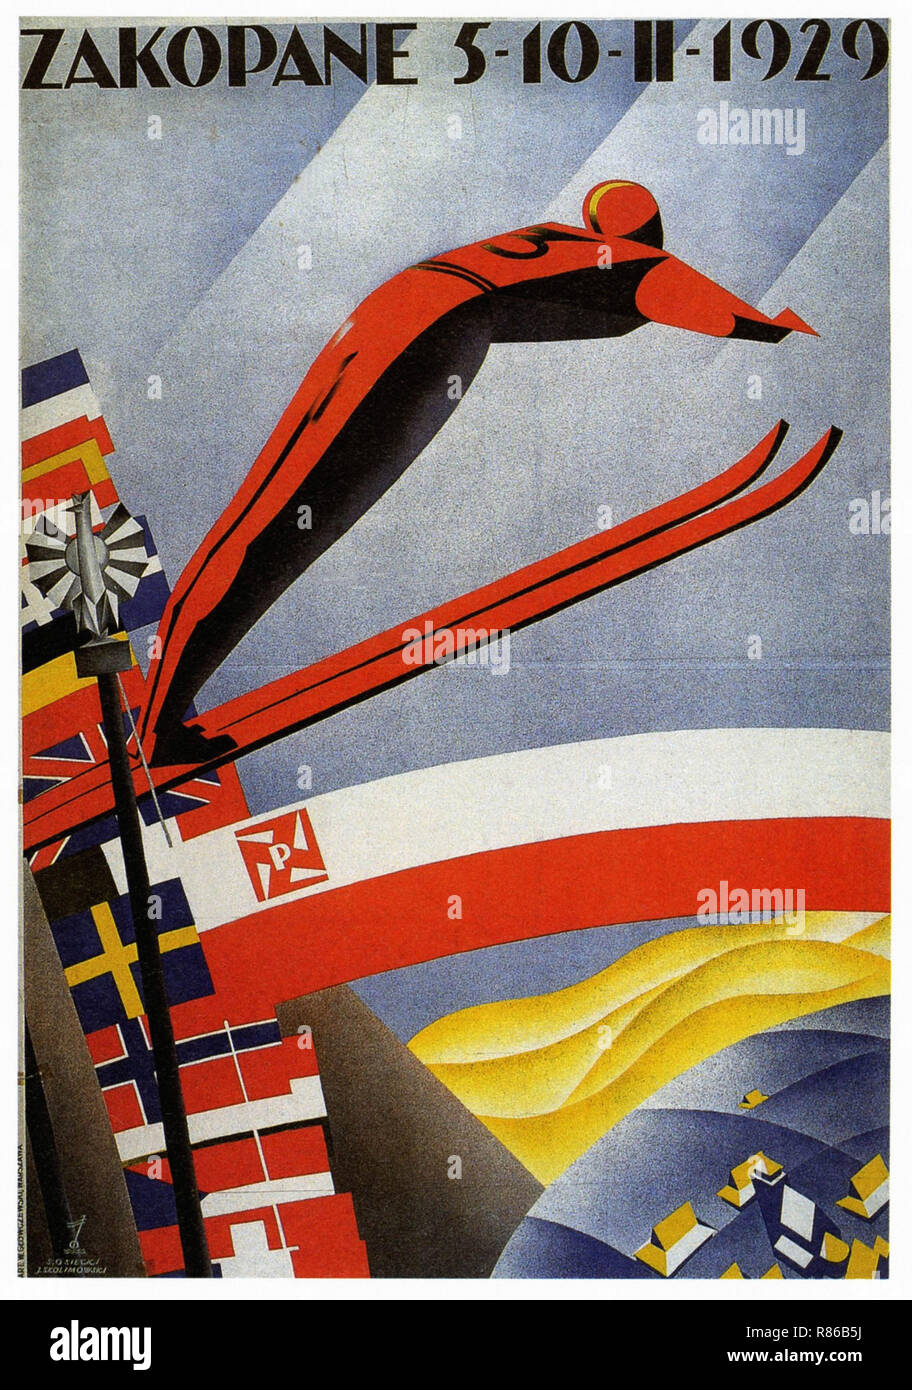 1929 Festival de esquí de Zakopane - Vintage poster publicitario Foto de stock